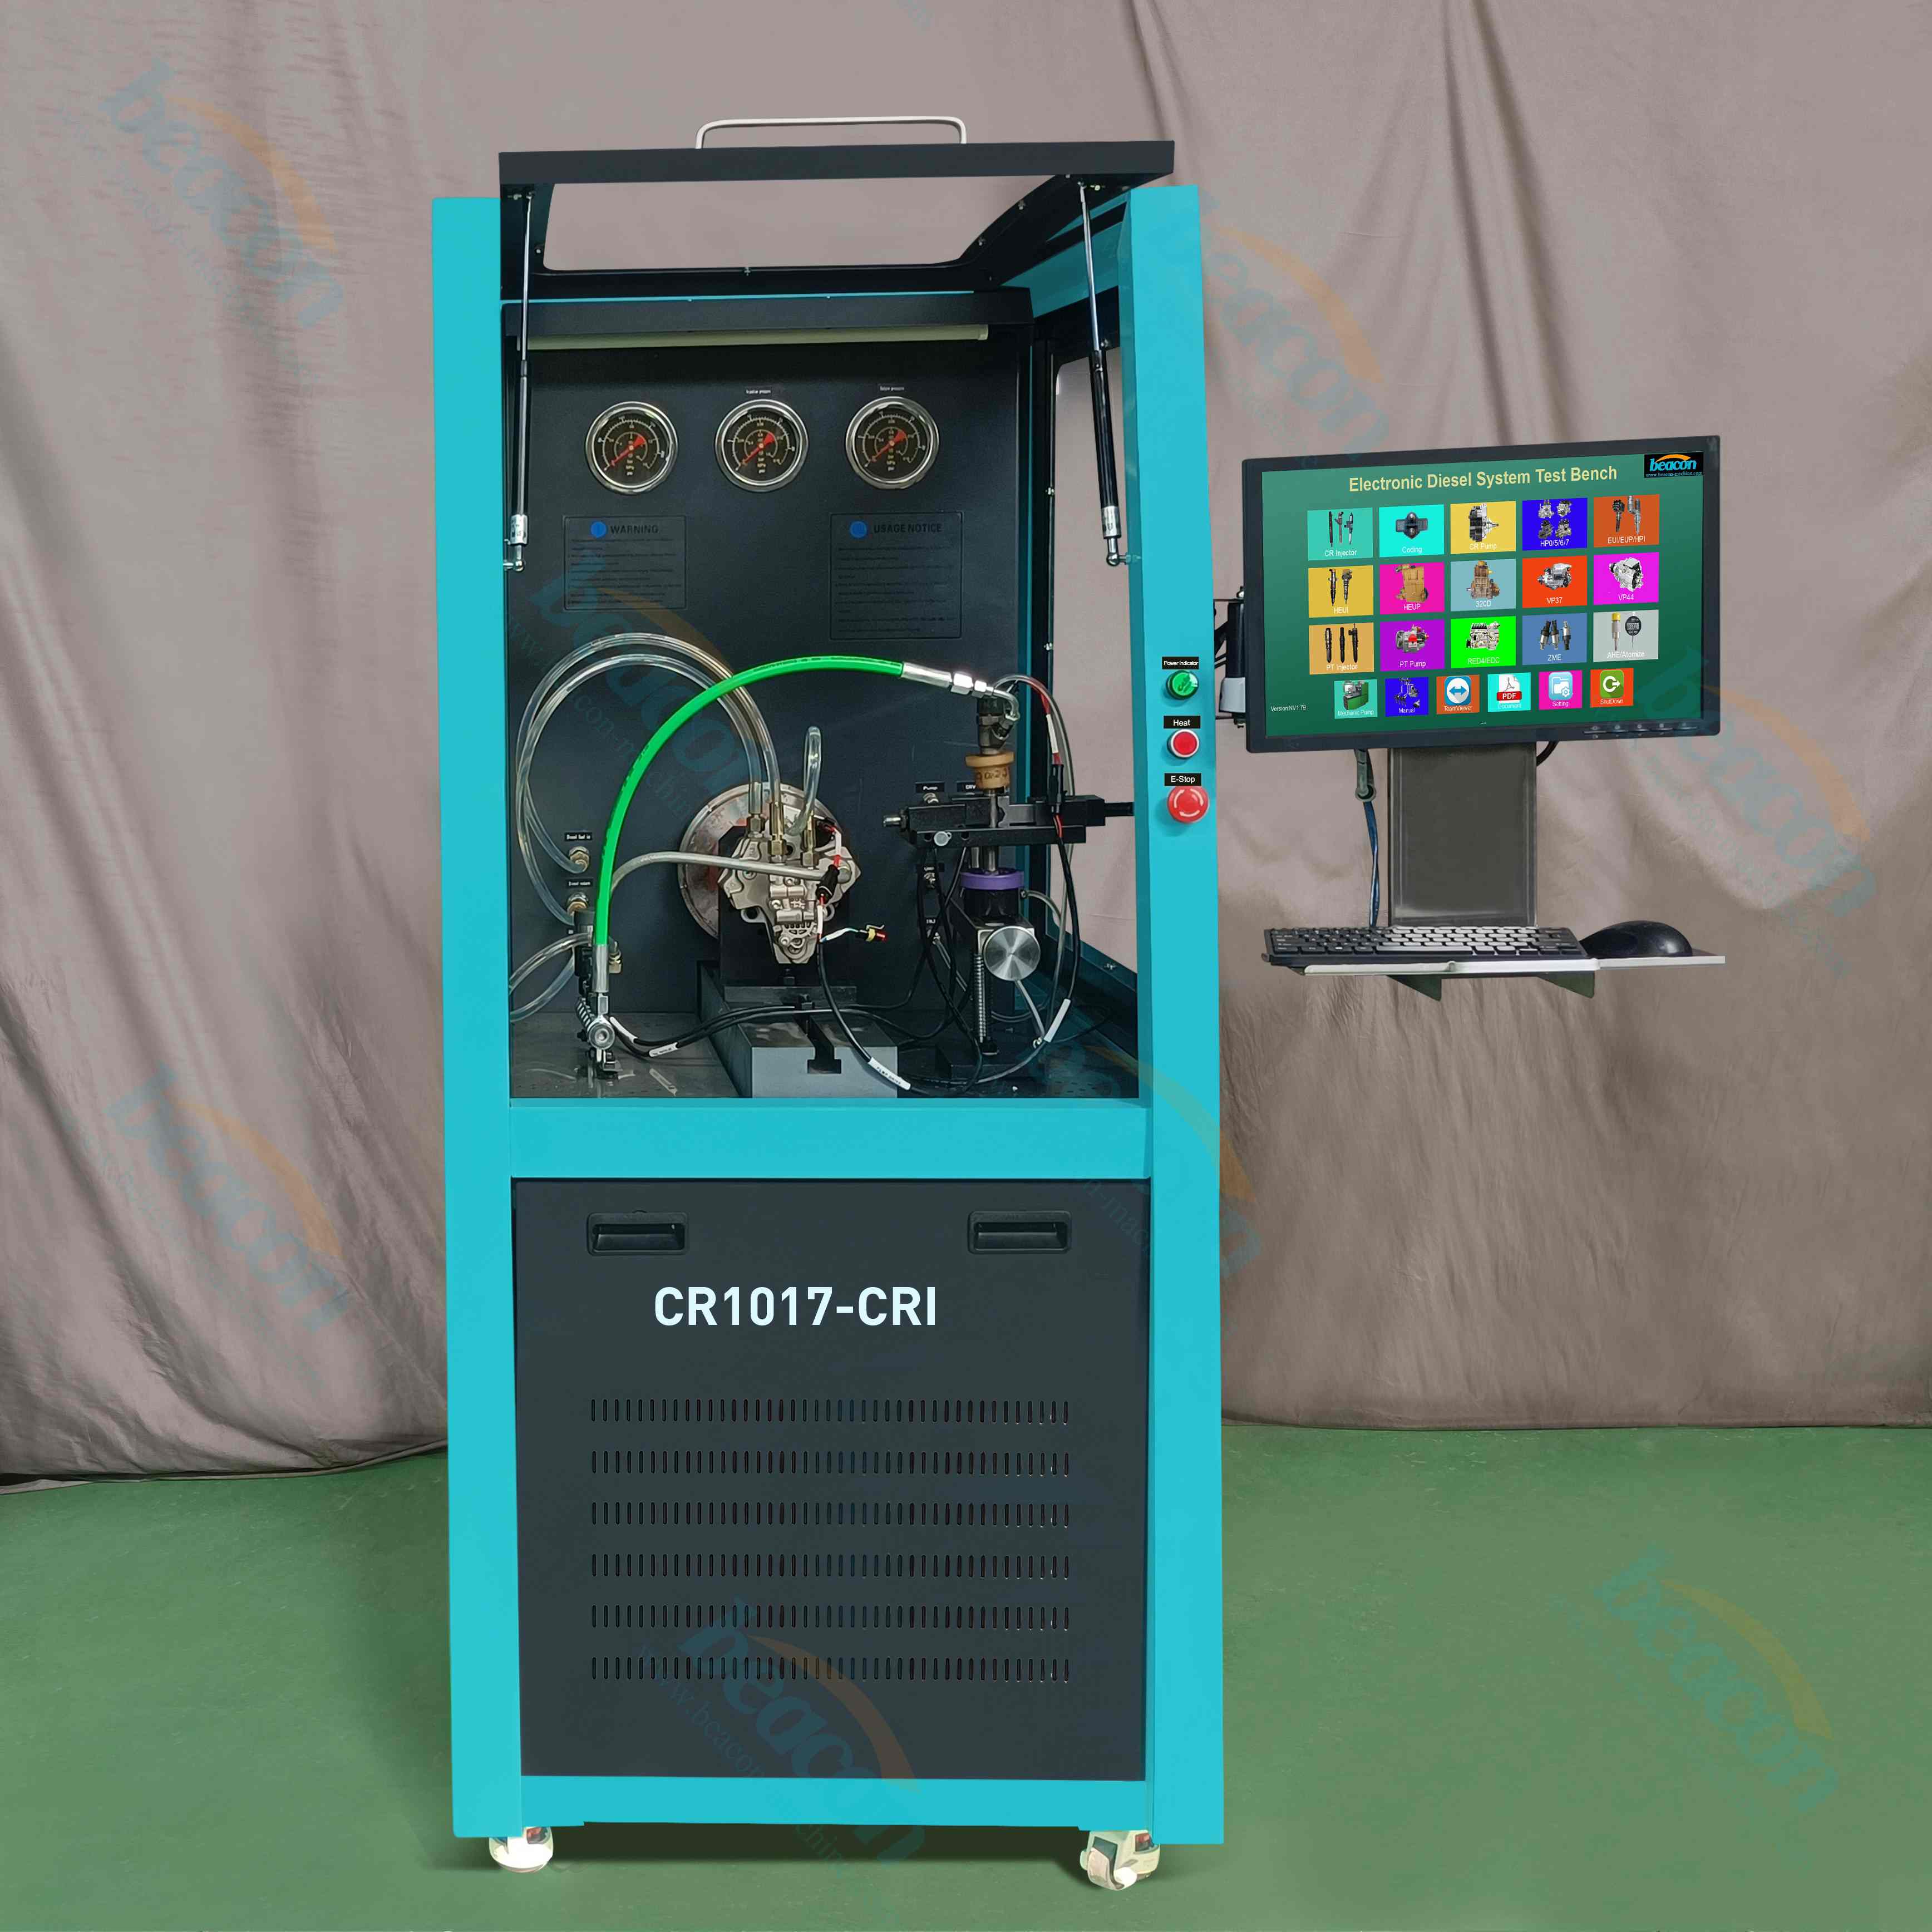 Инструмент для ремонта автоматического ремонта CR1017 Heui eui eup pt Общий рельсовой насос насос дизельного топлива.